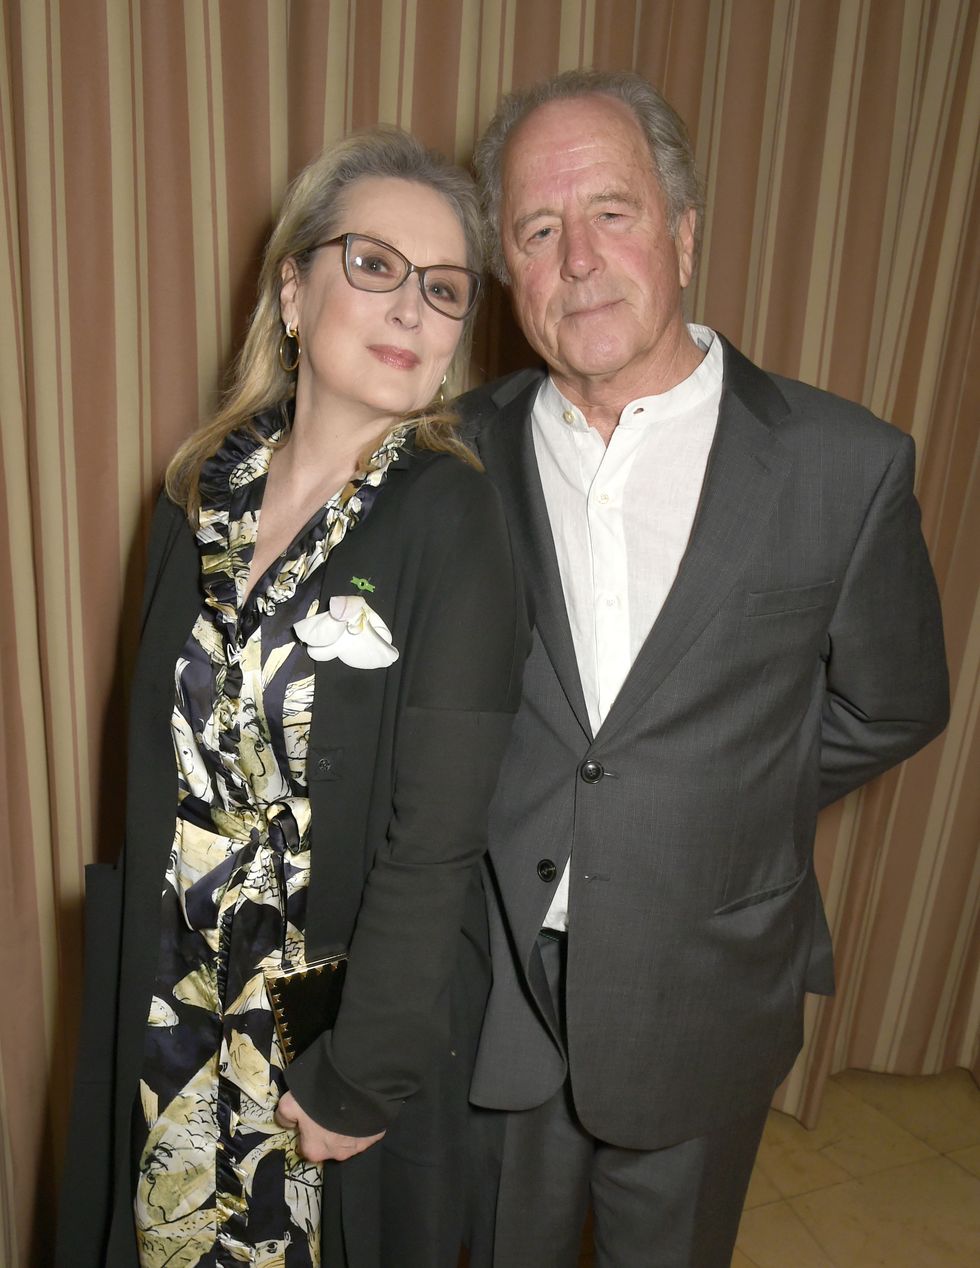 La actriz Meryl Streep L y el escultor Don Gummer asisten a una cena para celebrar el CCG y el viaje hacia el lujo sostenible el 24 de febrero de 2017 en Los Ángeles, California.